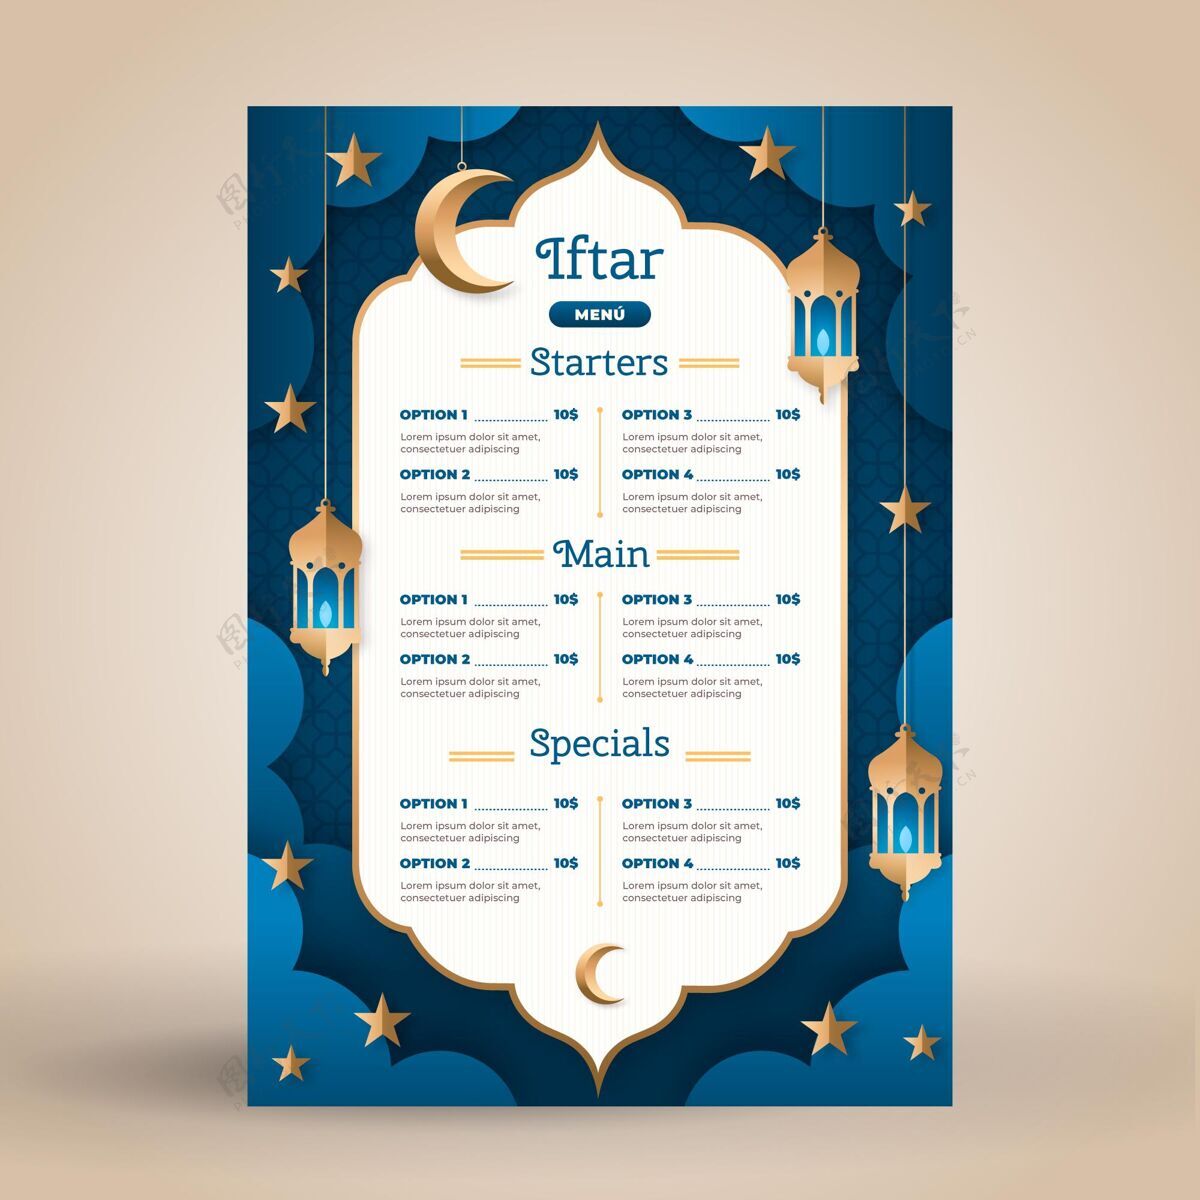 宗教开斋菜单模板在纸的风格模板Ftoor伊斯兰